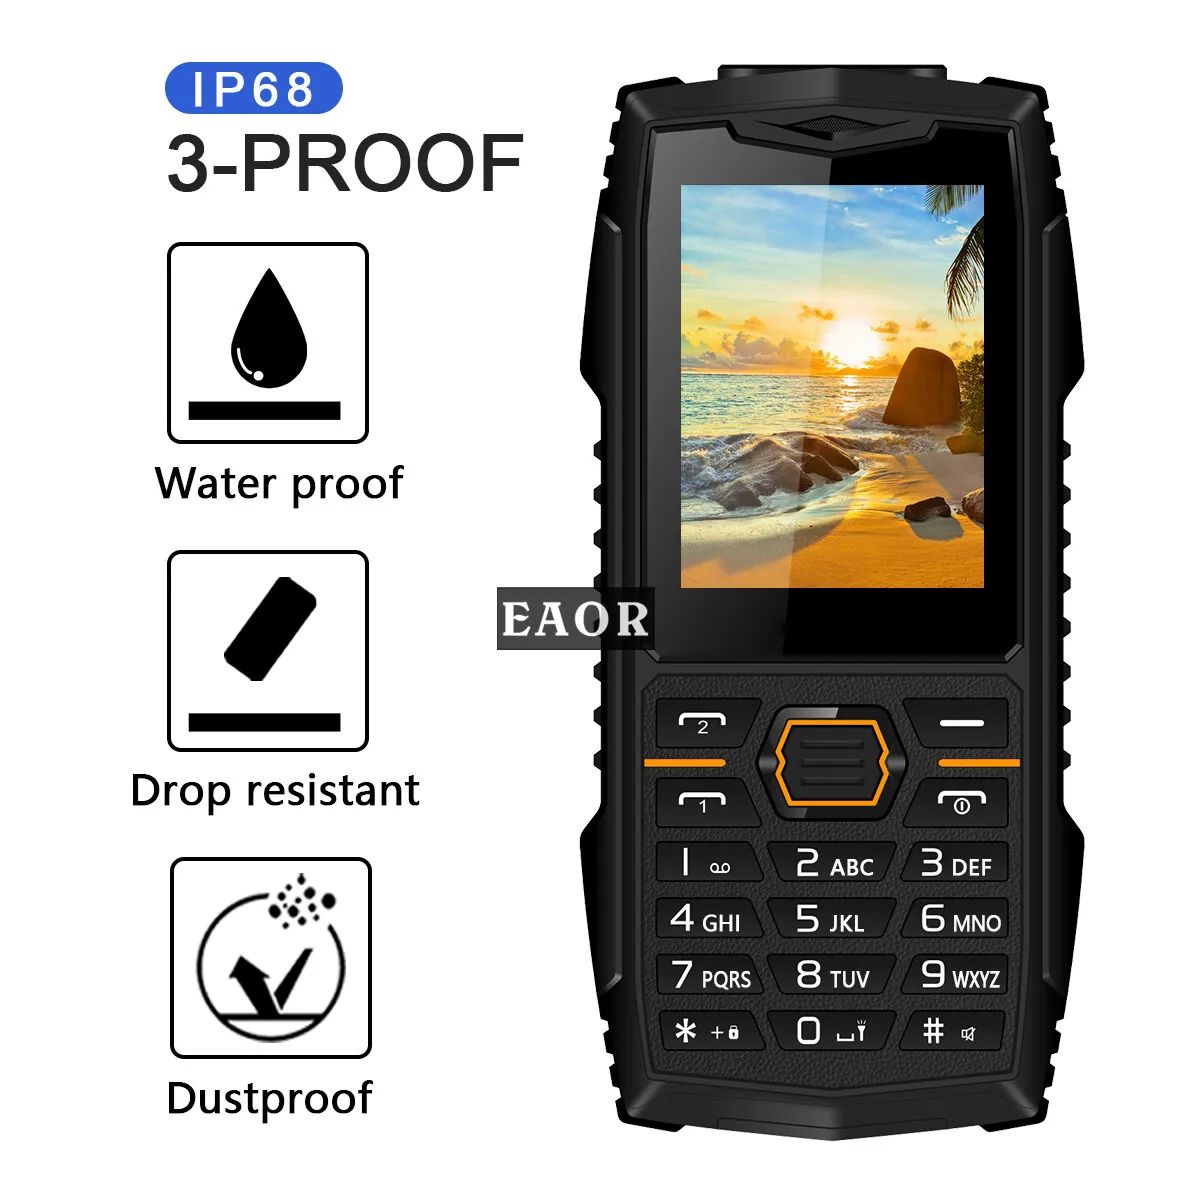 

EAOR 2G водонепроницаемый прочный телефон пыленепроницаемый с большим аккумулятором телефон 2,4 дюймов две SIM-карты Функциональная панель Теле...